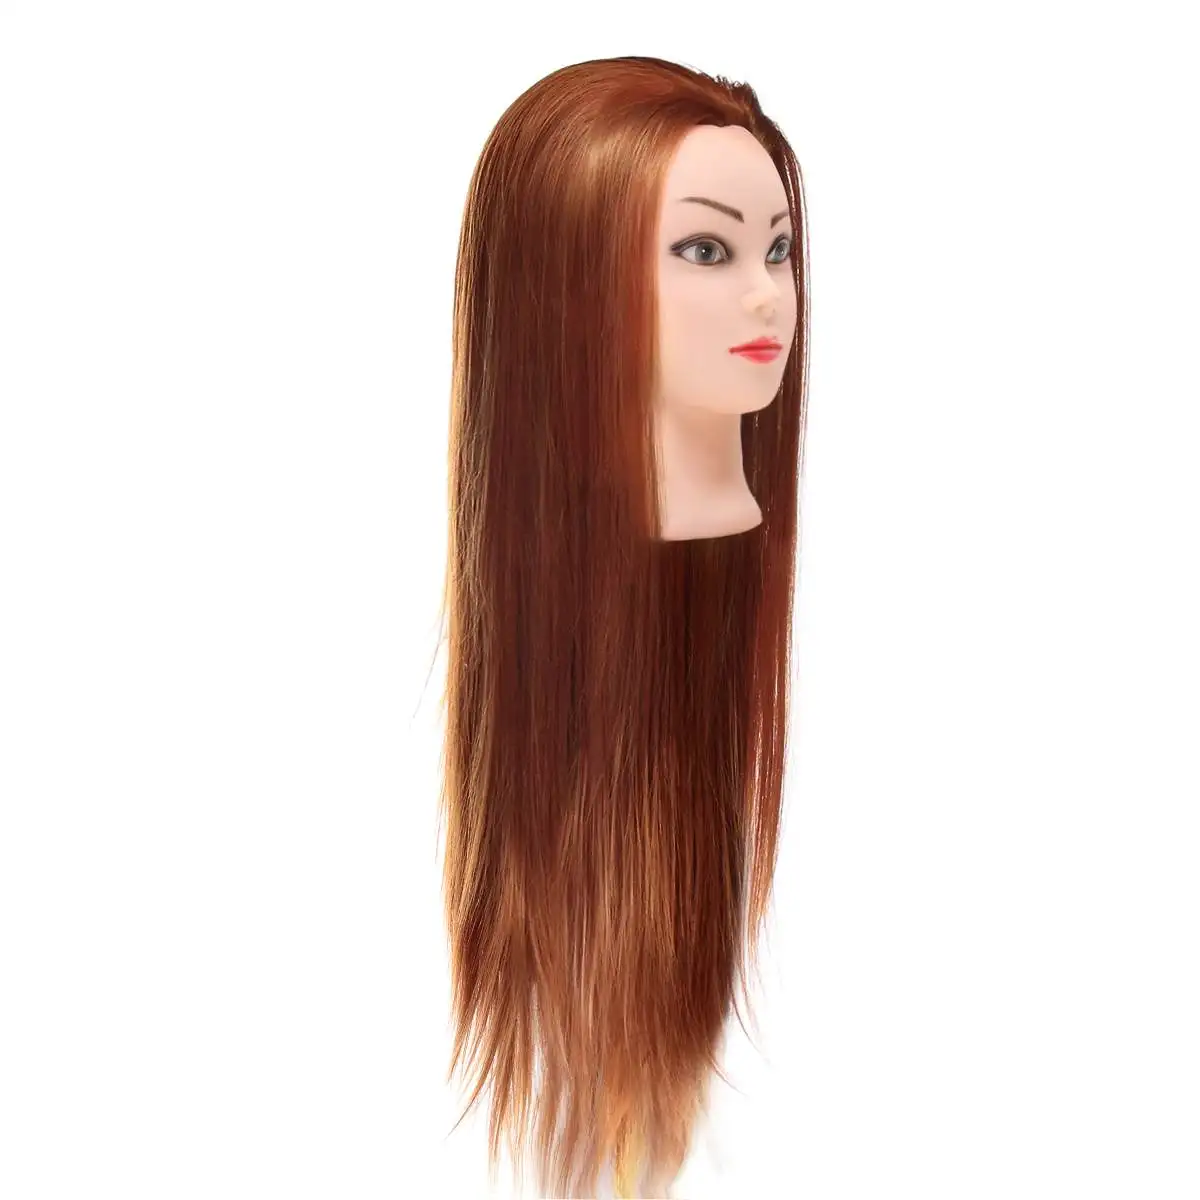 70 см длинные прямые волосы Парикмахерская Учебная практика манекен голова салон женщины парикмахер Стайлинг головы